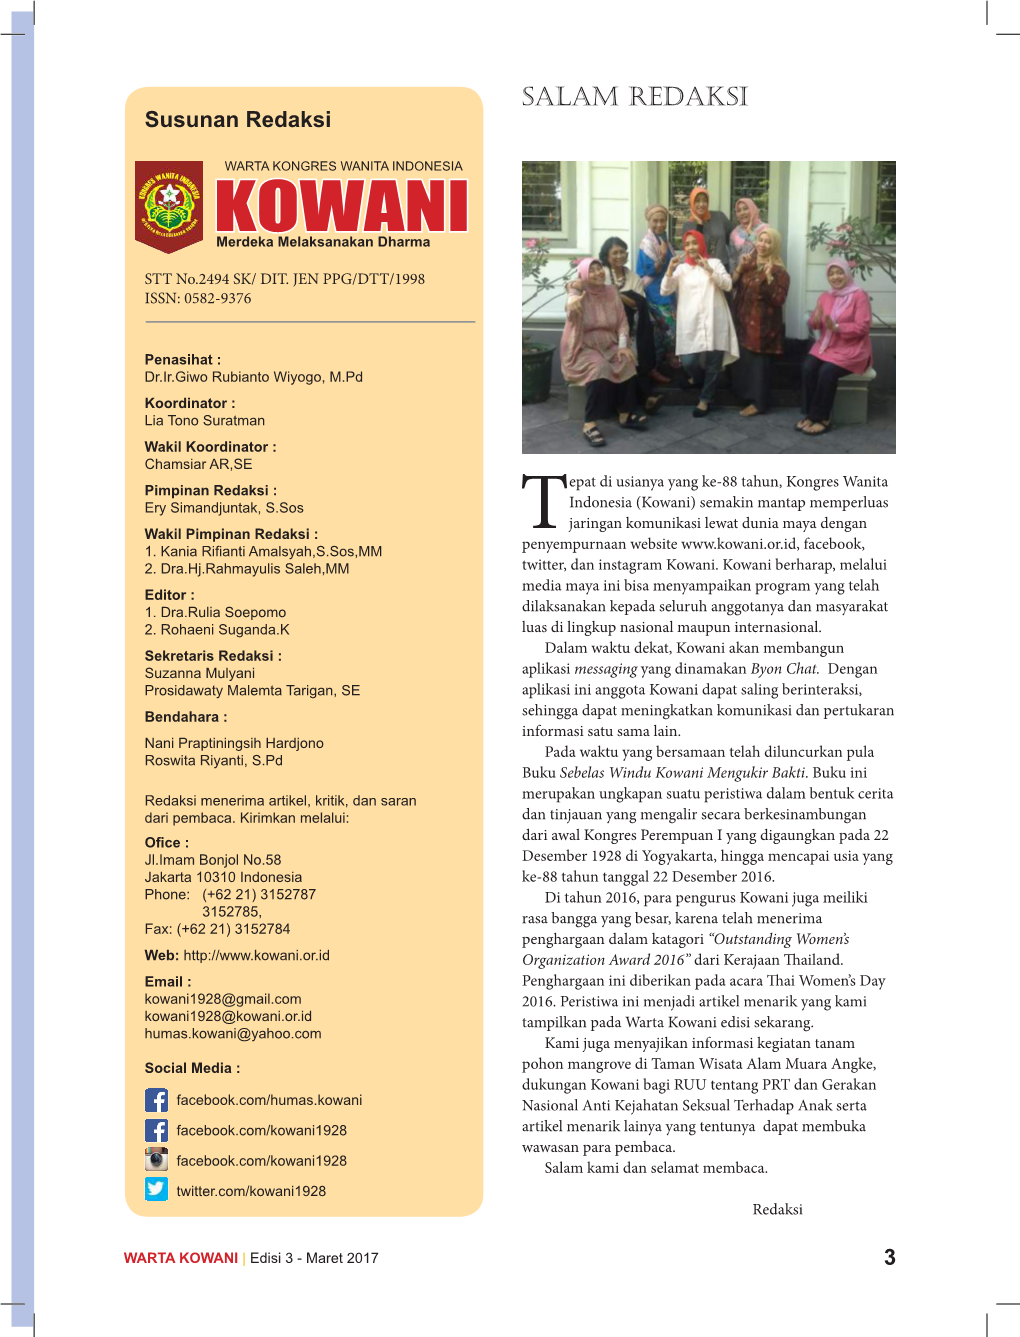 Warta Kowani Edisi III – Maret 2017